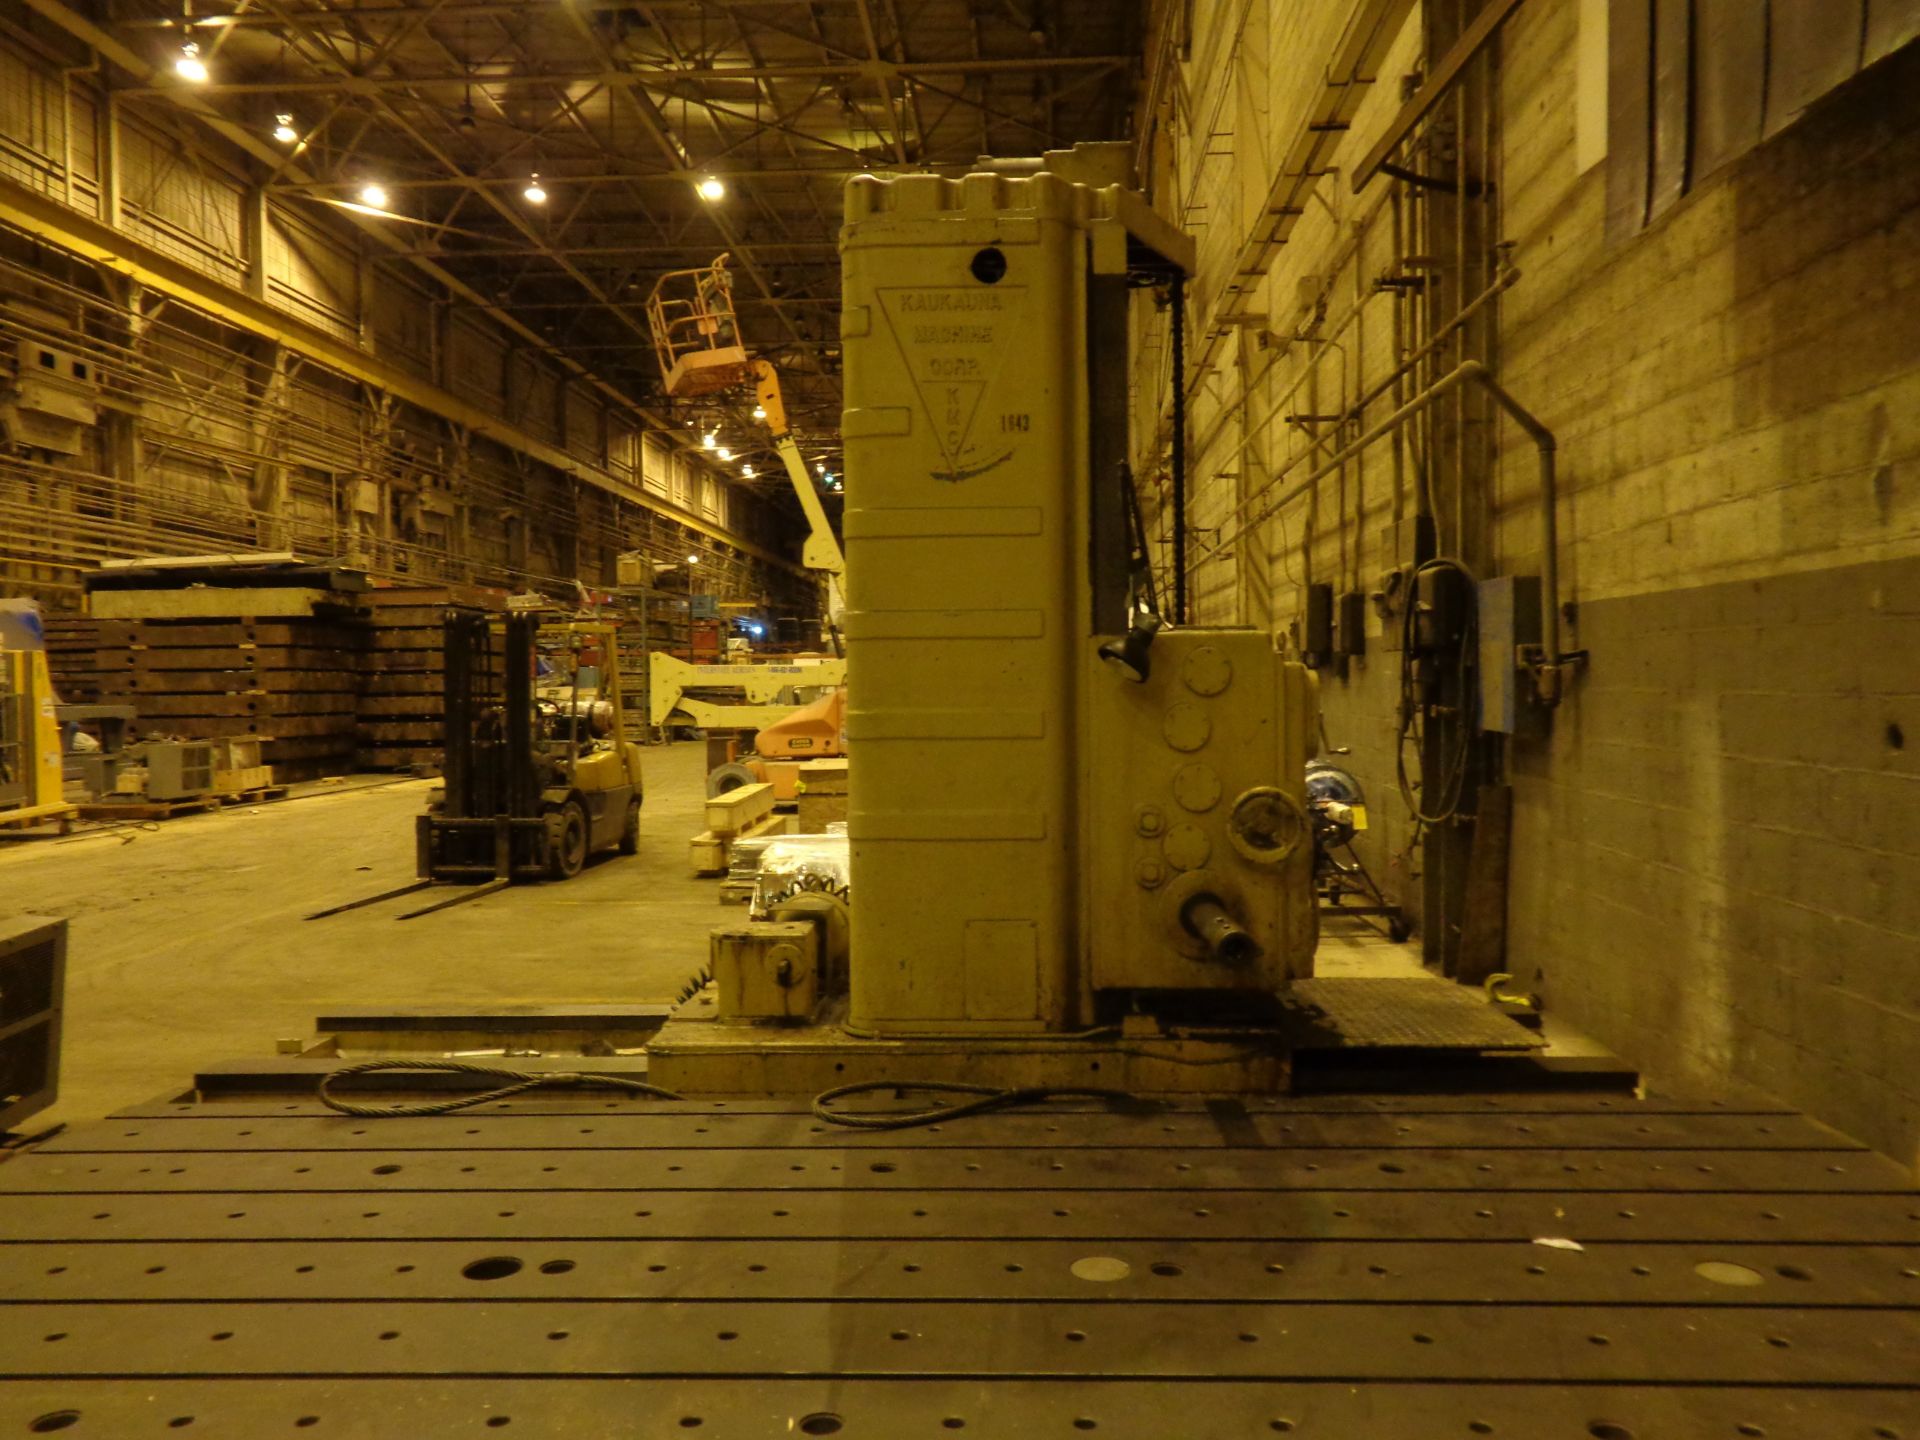 Kaukauna Floor Type Horizontal Boring Mill Milling Machine - Image 11 of 23